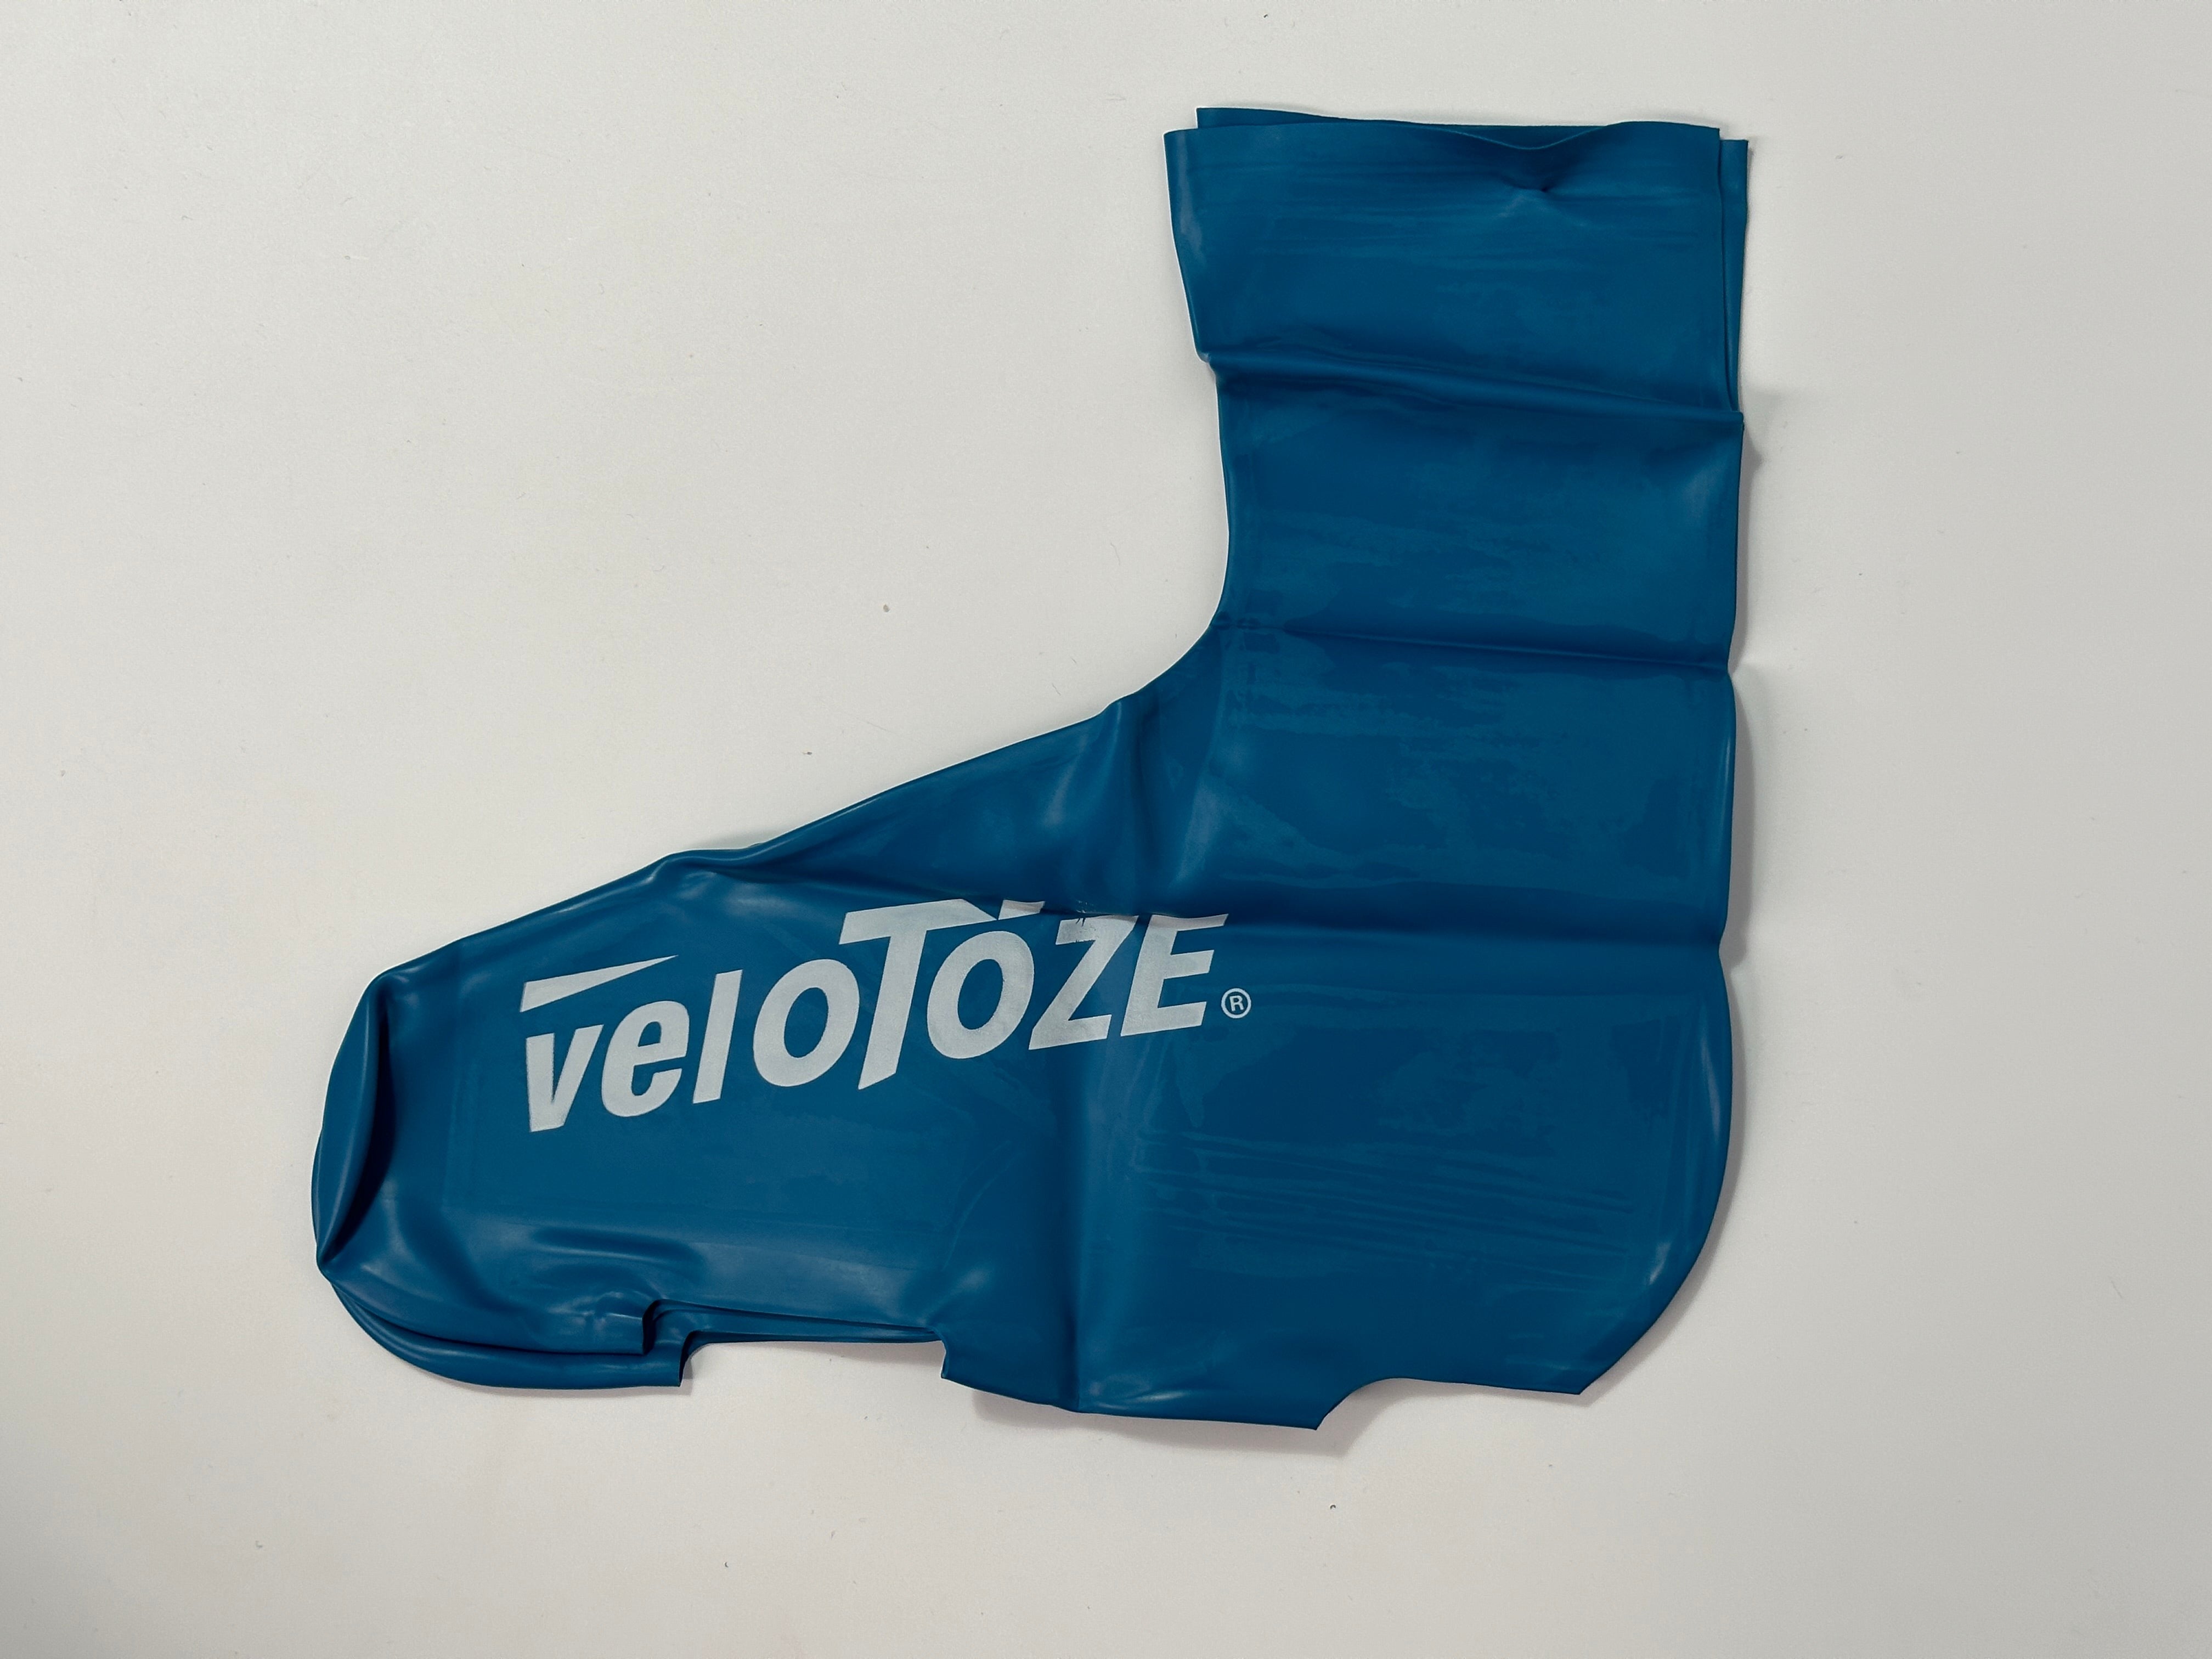 Capas de sapato de chuva altas Velotoze - azul